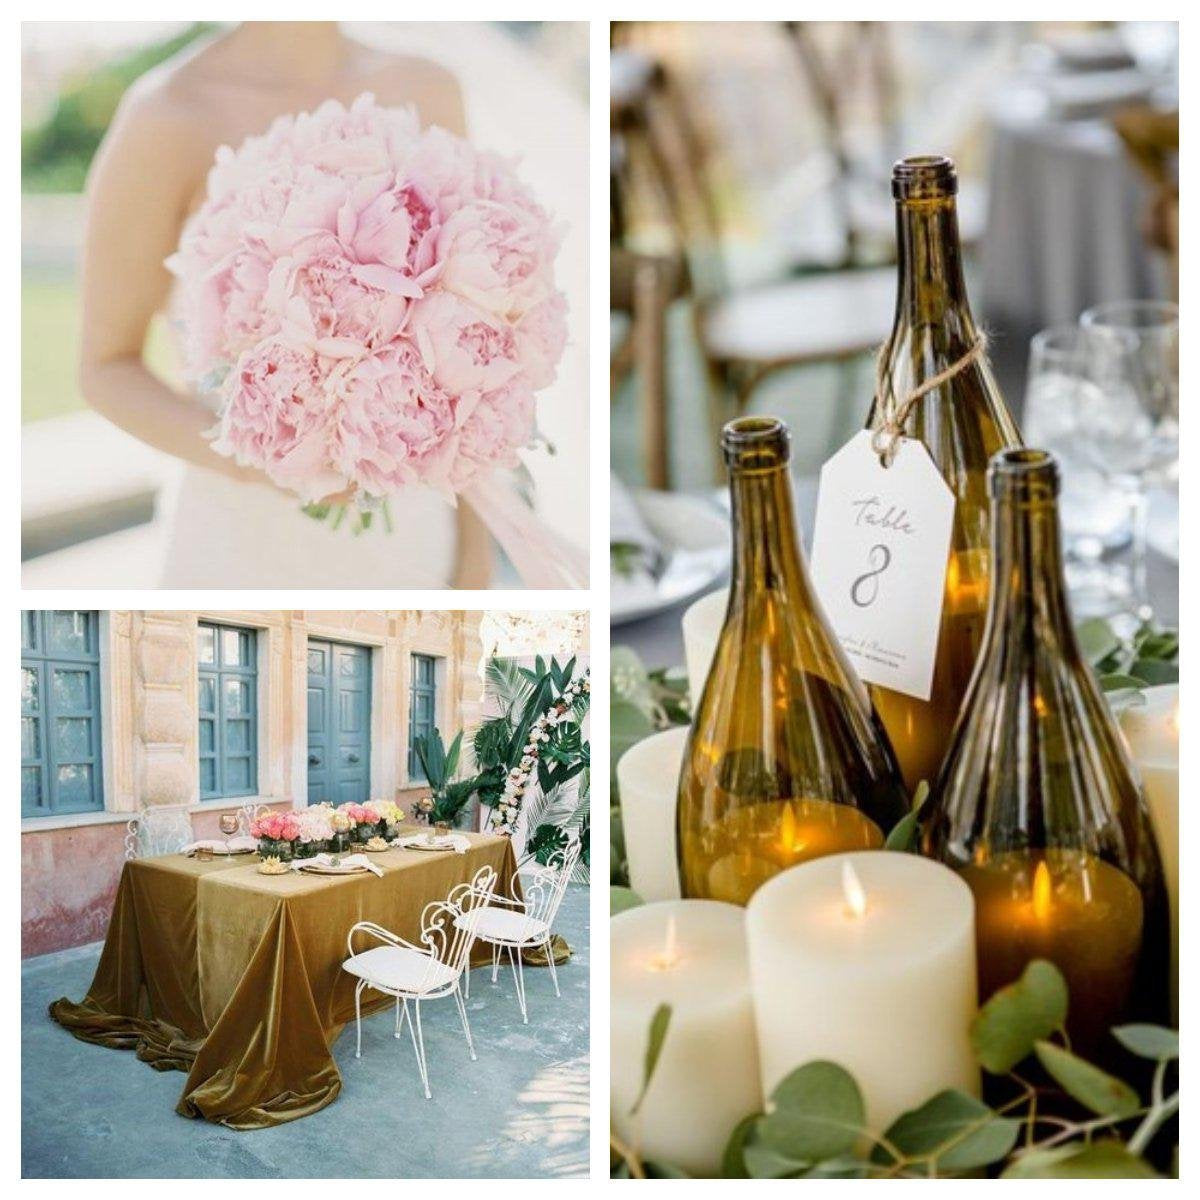 DIY Wedding Ideas on a Budget: DIY Wedding Decor, Flowers and Decorations